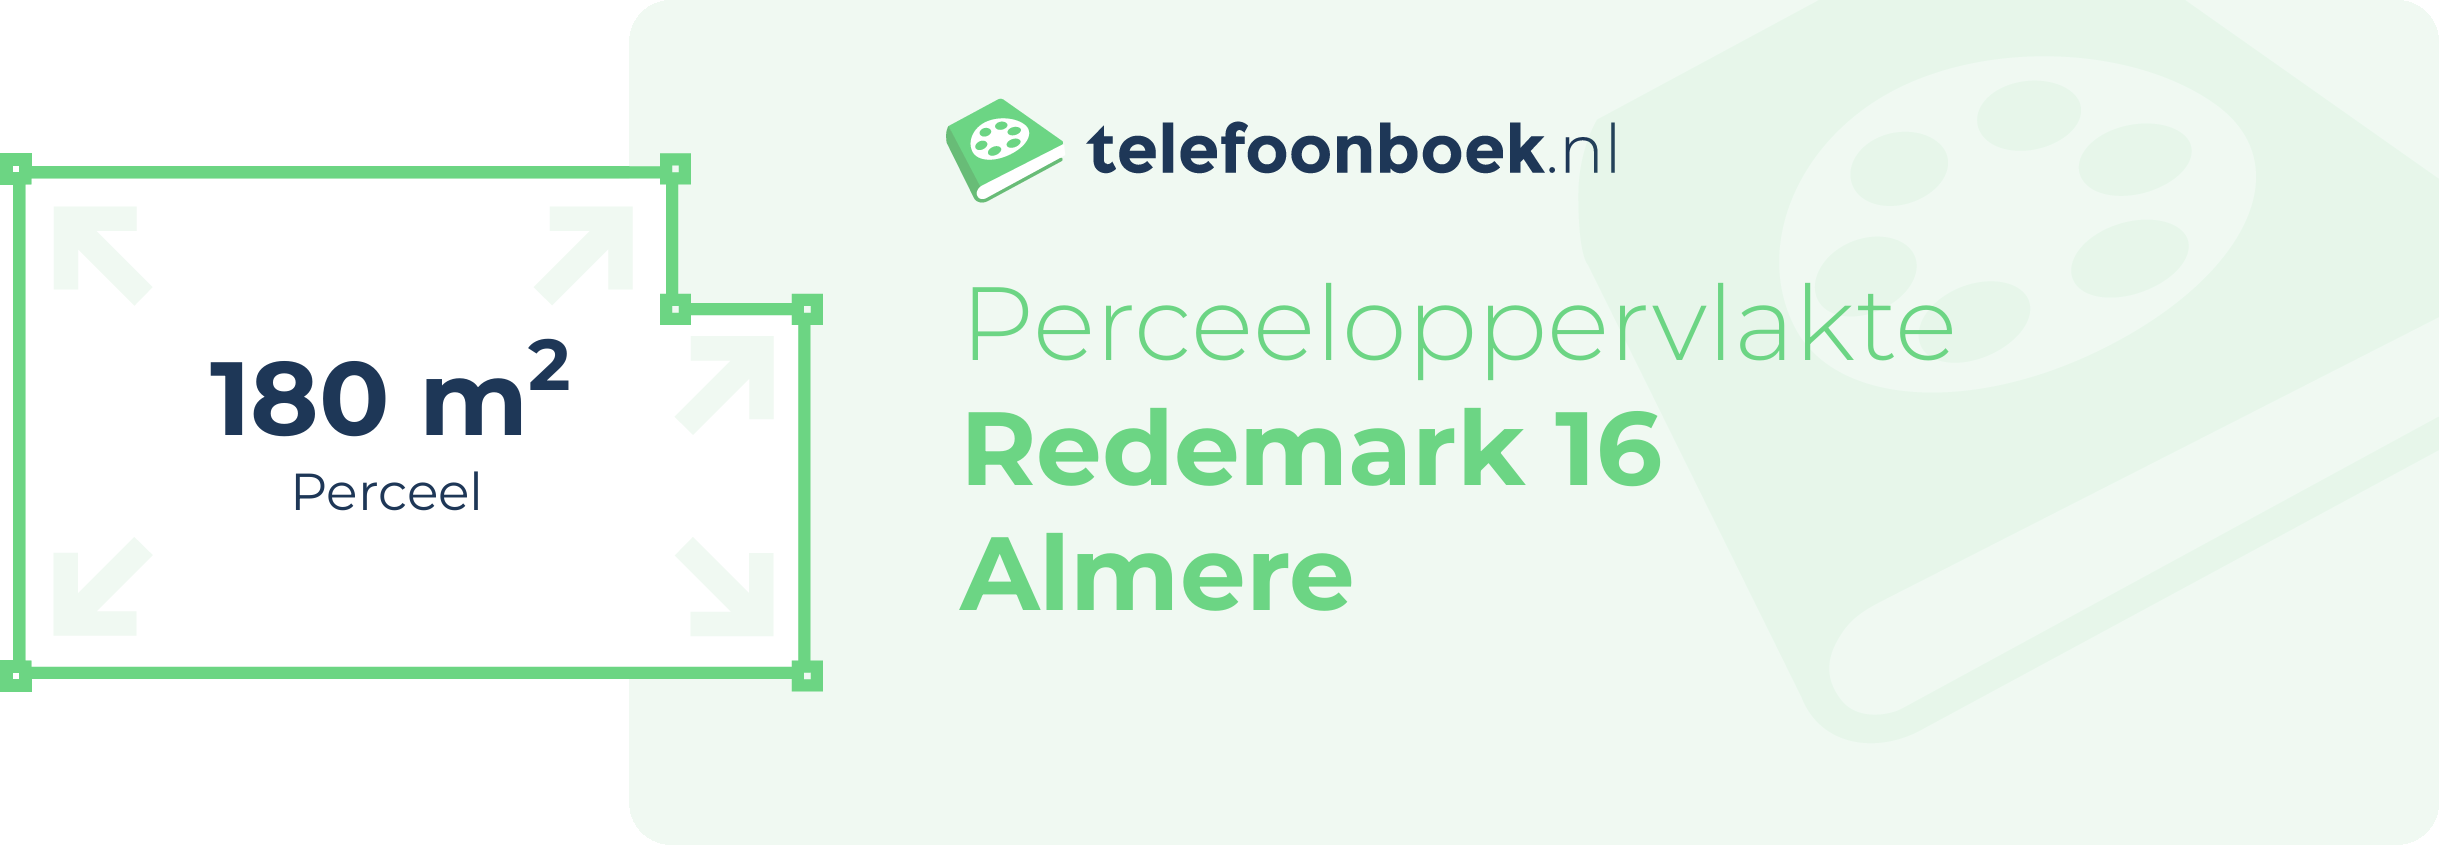 Perceeloppervlakte Redemark 16 Almere